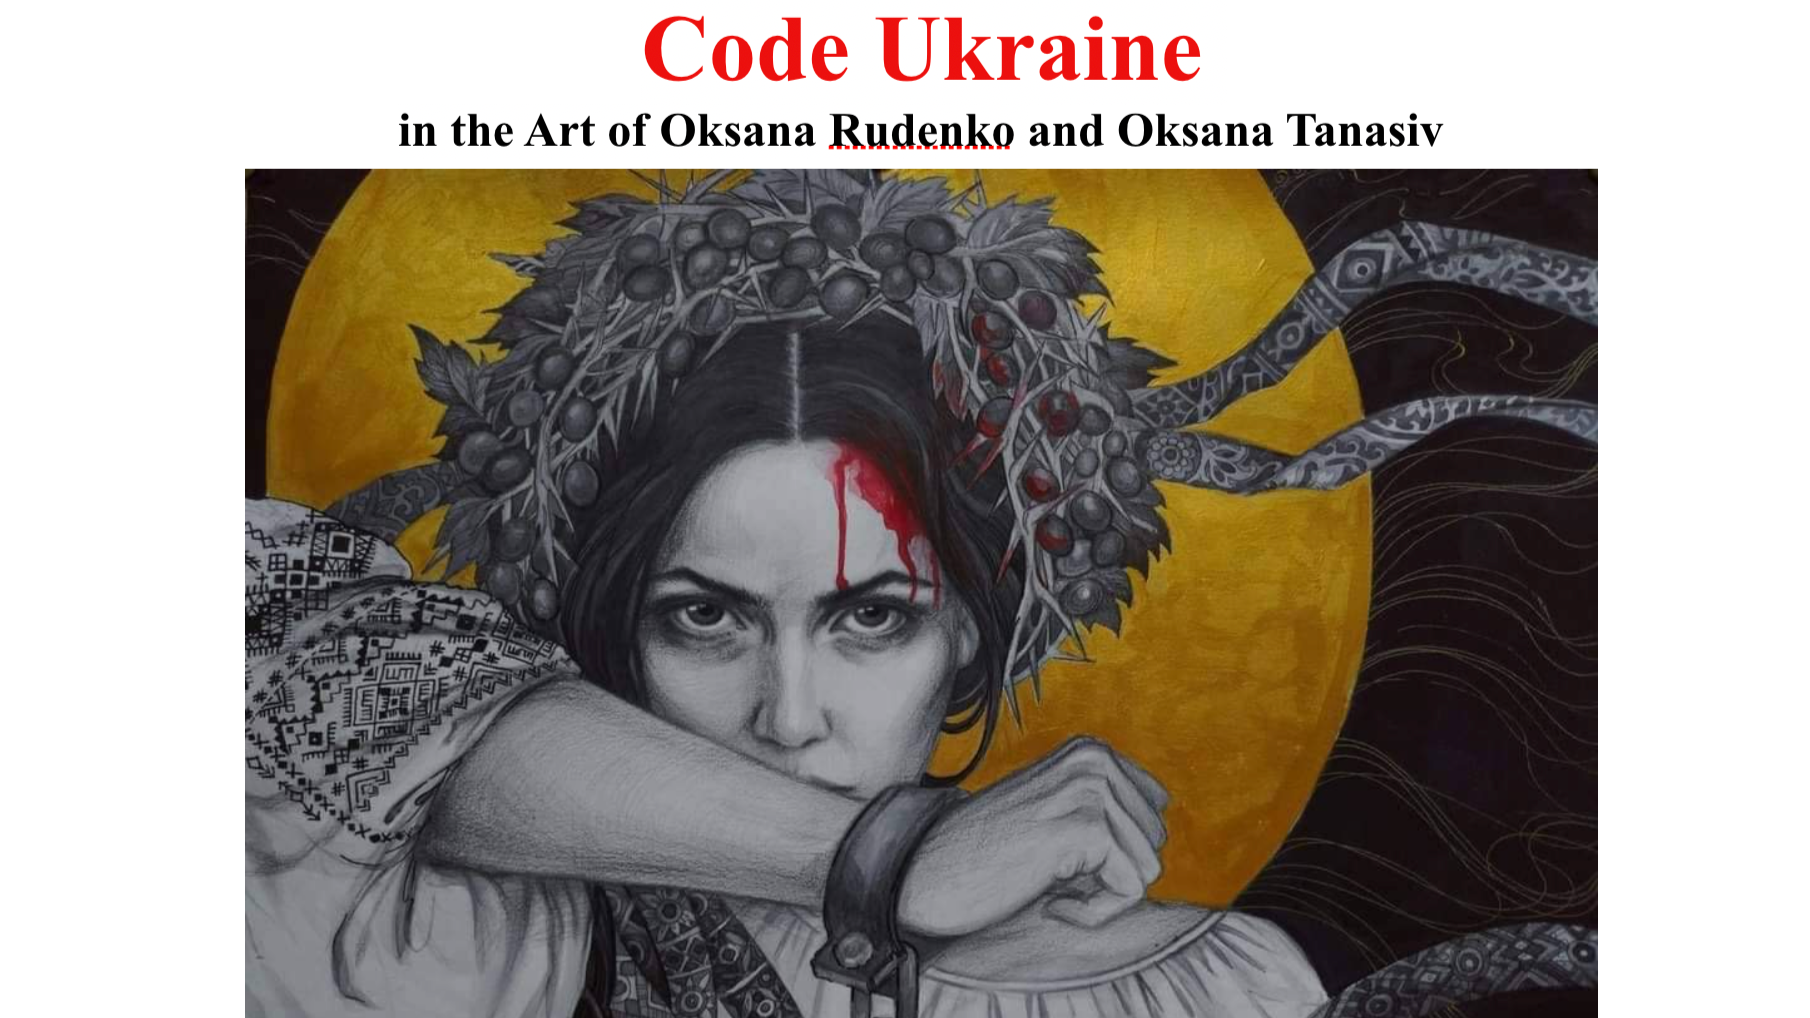 Code Ukraine in the Art of Oksana Rudenko and Oksana Tanasiv